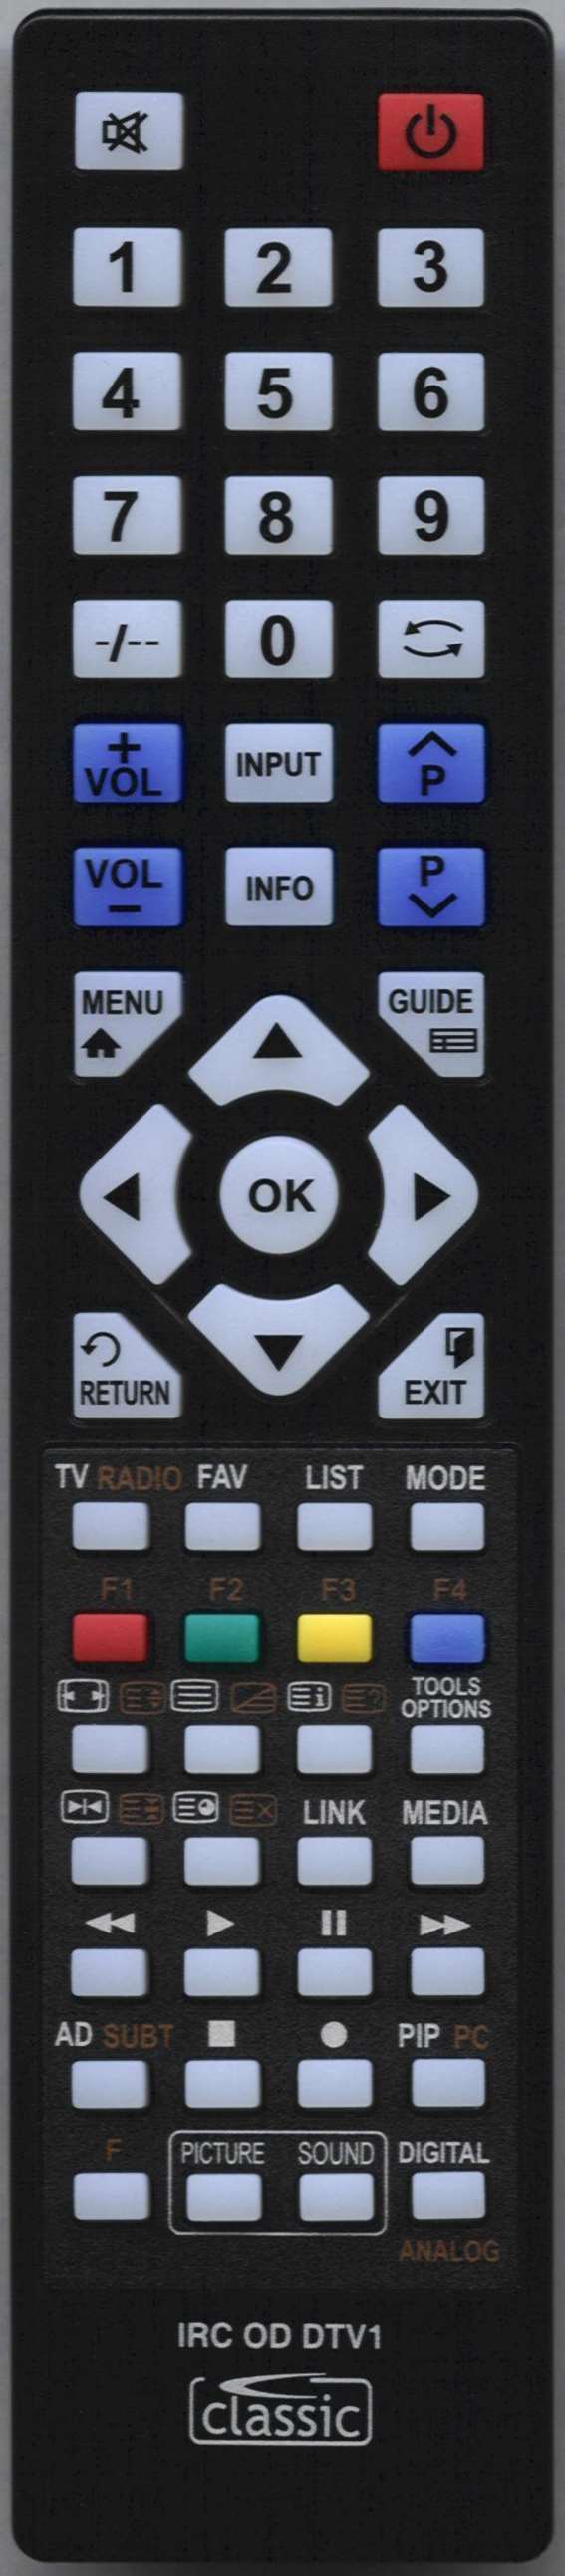 AOC L32W551T Remote Control